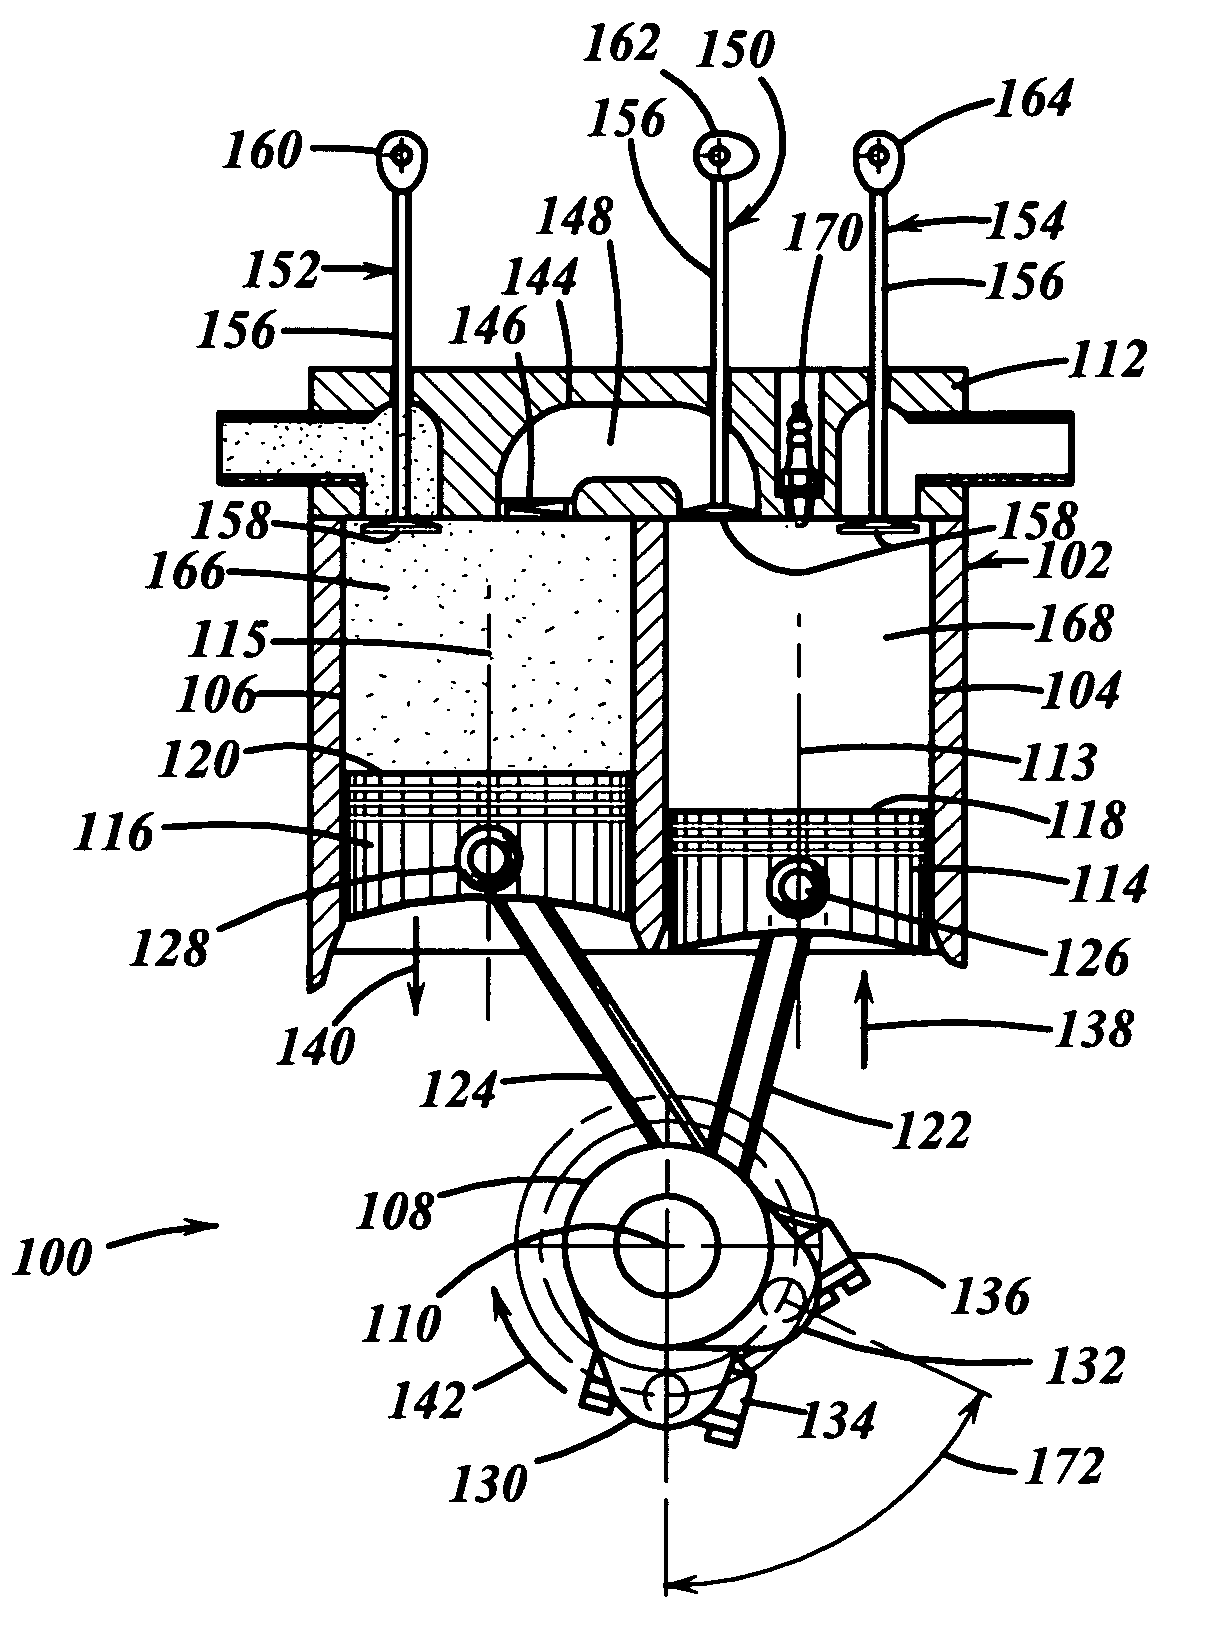 Split-cycle four-stroke engine